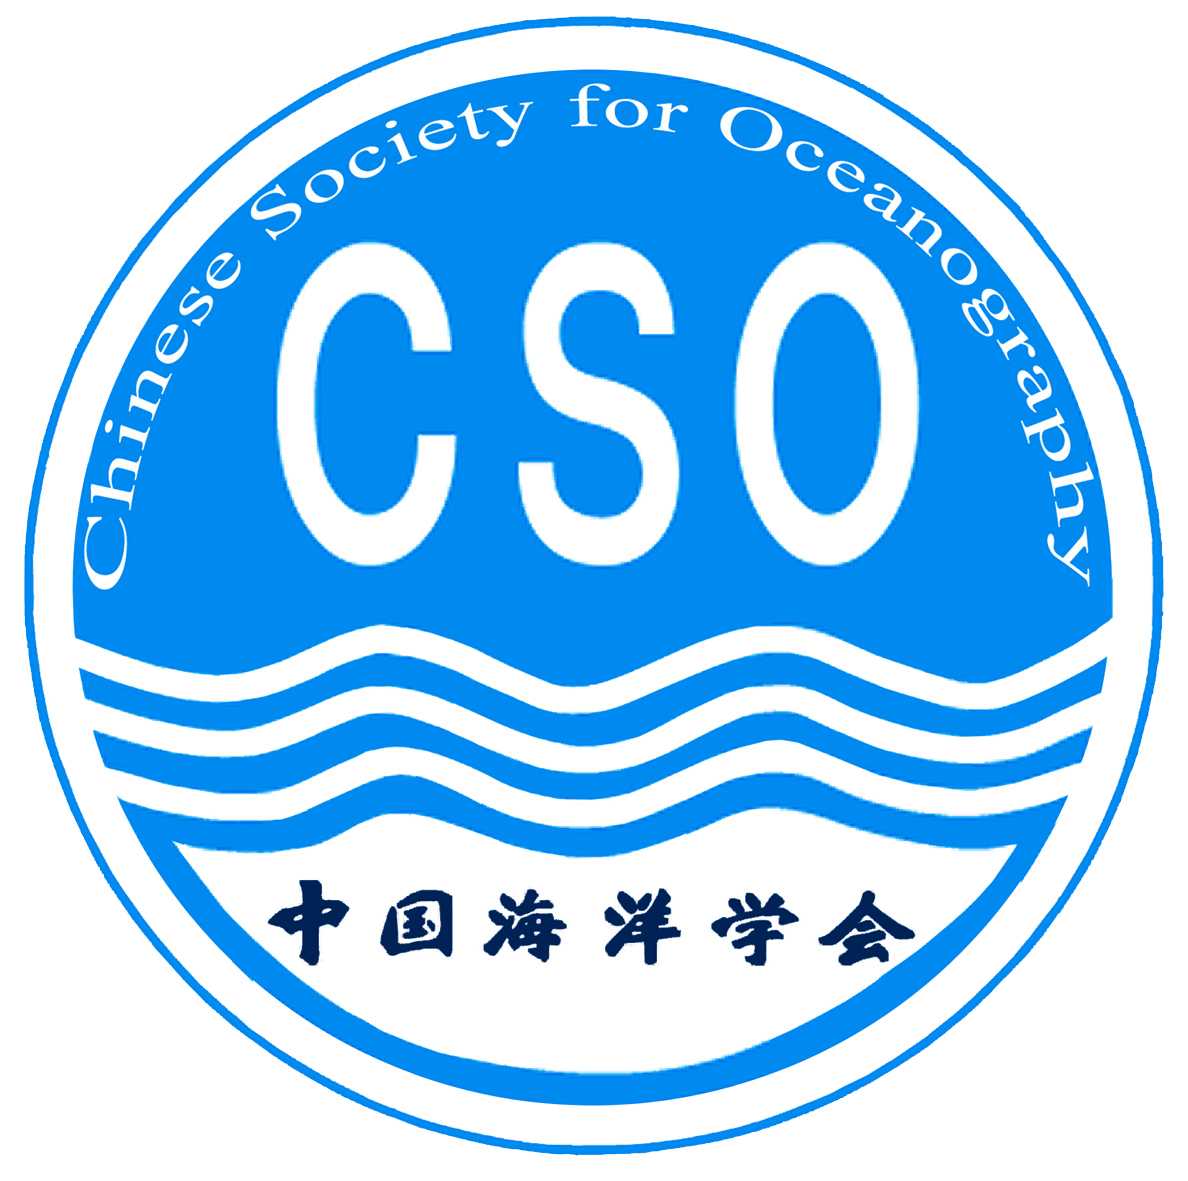 中国海洋学会